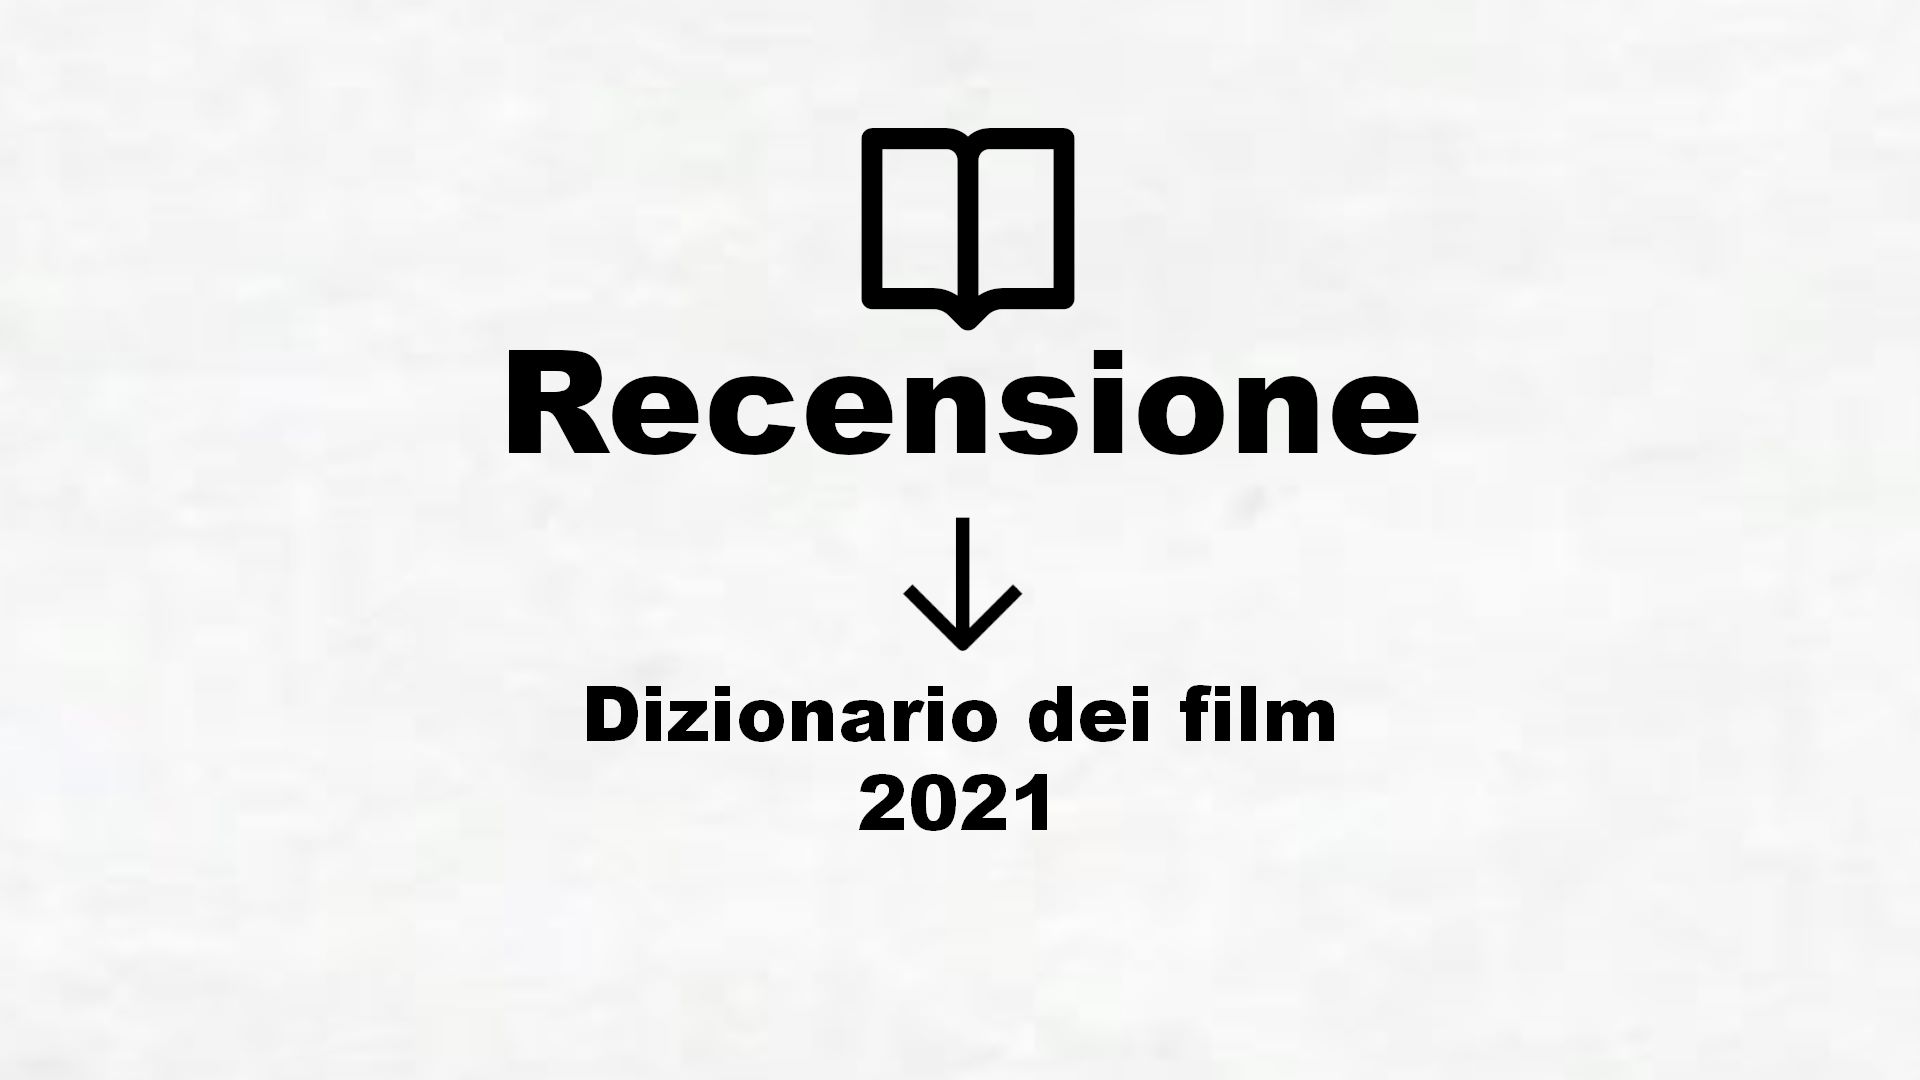 Dizionario dei film 2021 – Recensione Libro